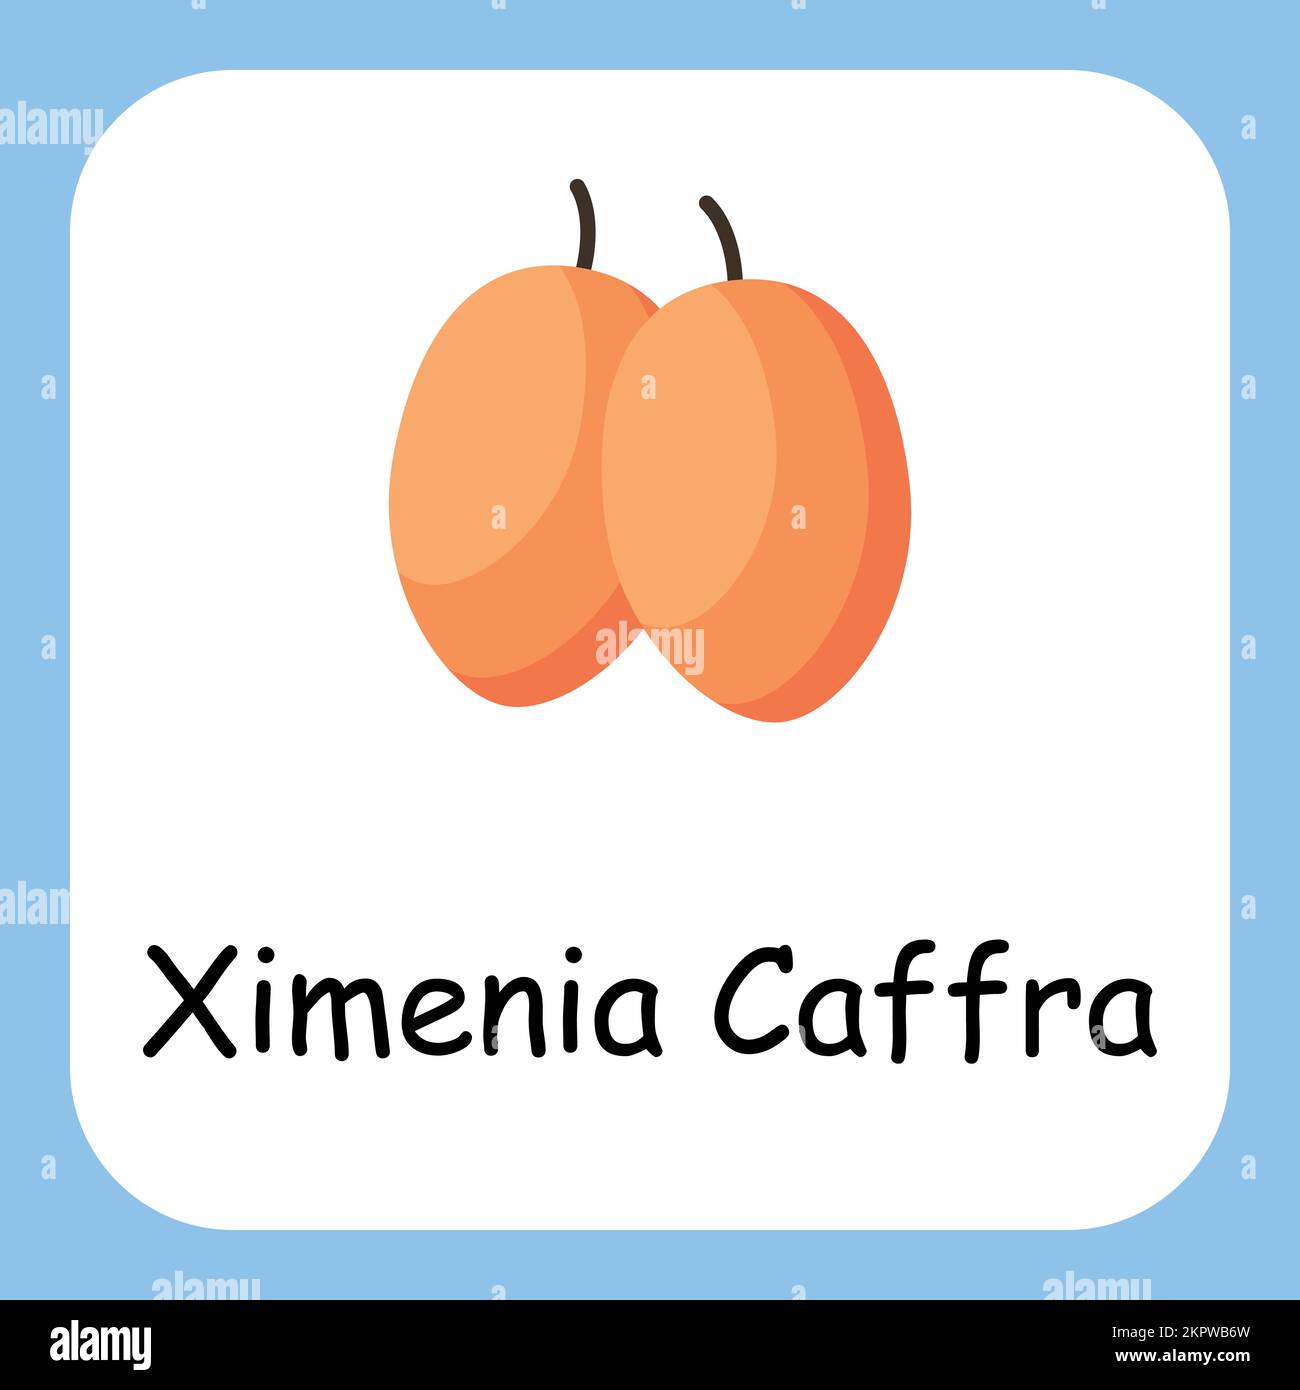 Ximenia caffra Clip Art, Illustration for Kids, Cartoon Fruits Illustration Stock Vector